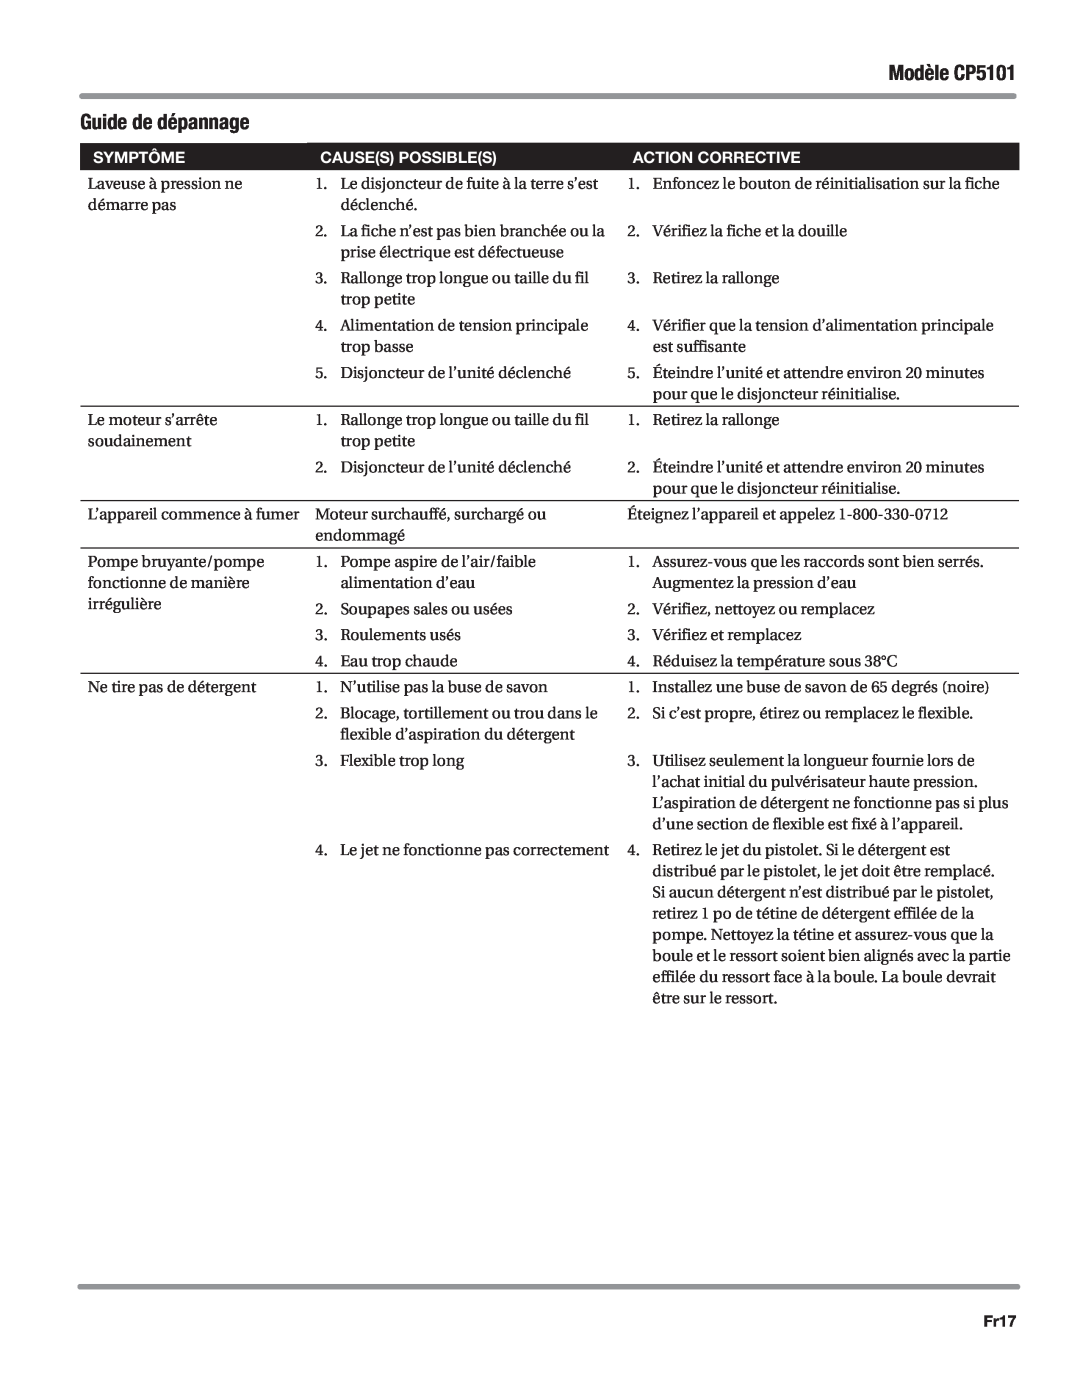 Campbell Hausfeld manual Fr17, Modèle CP5101, Guide de dépannage, Symptôme, Causes possibles, Action corrective 